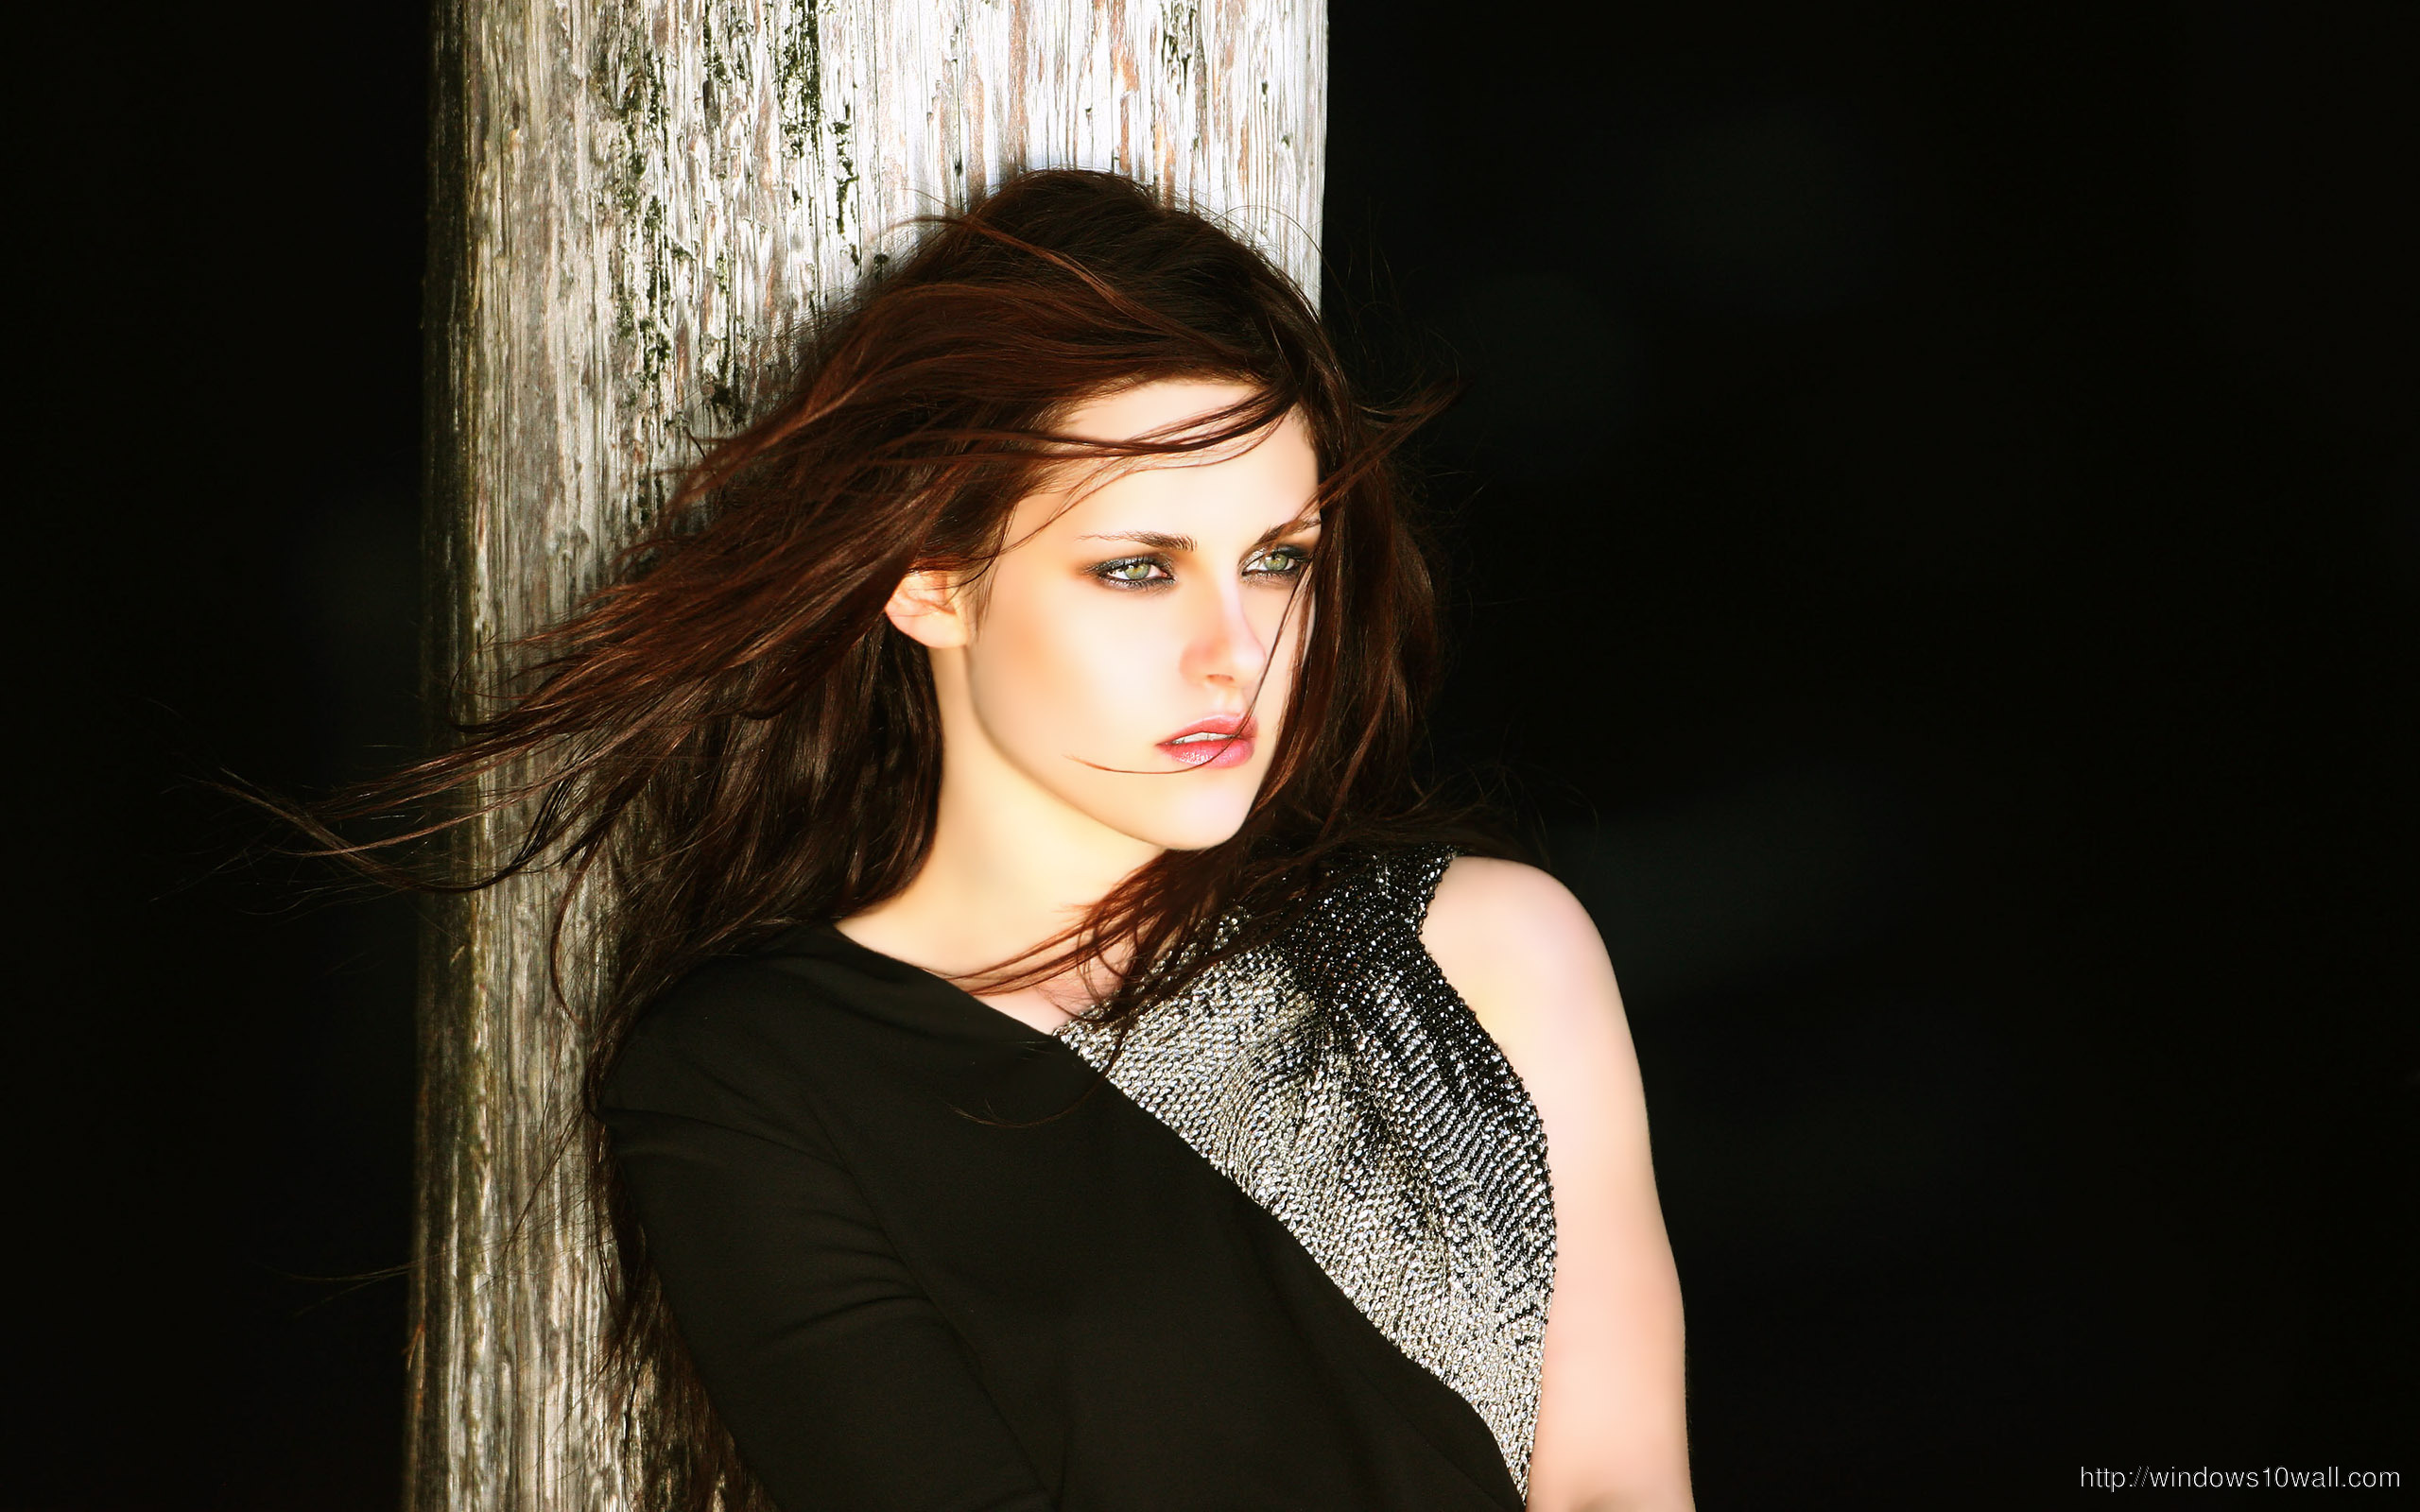 Movie Star Kristen Stewart in Black Background Wallpaper